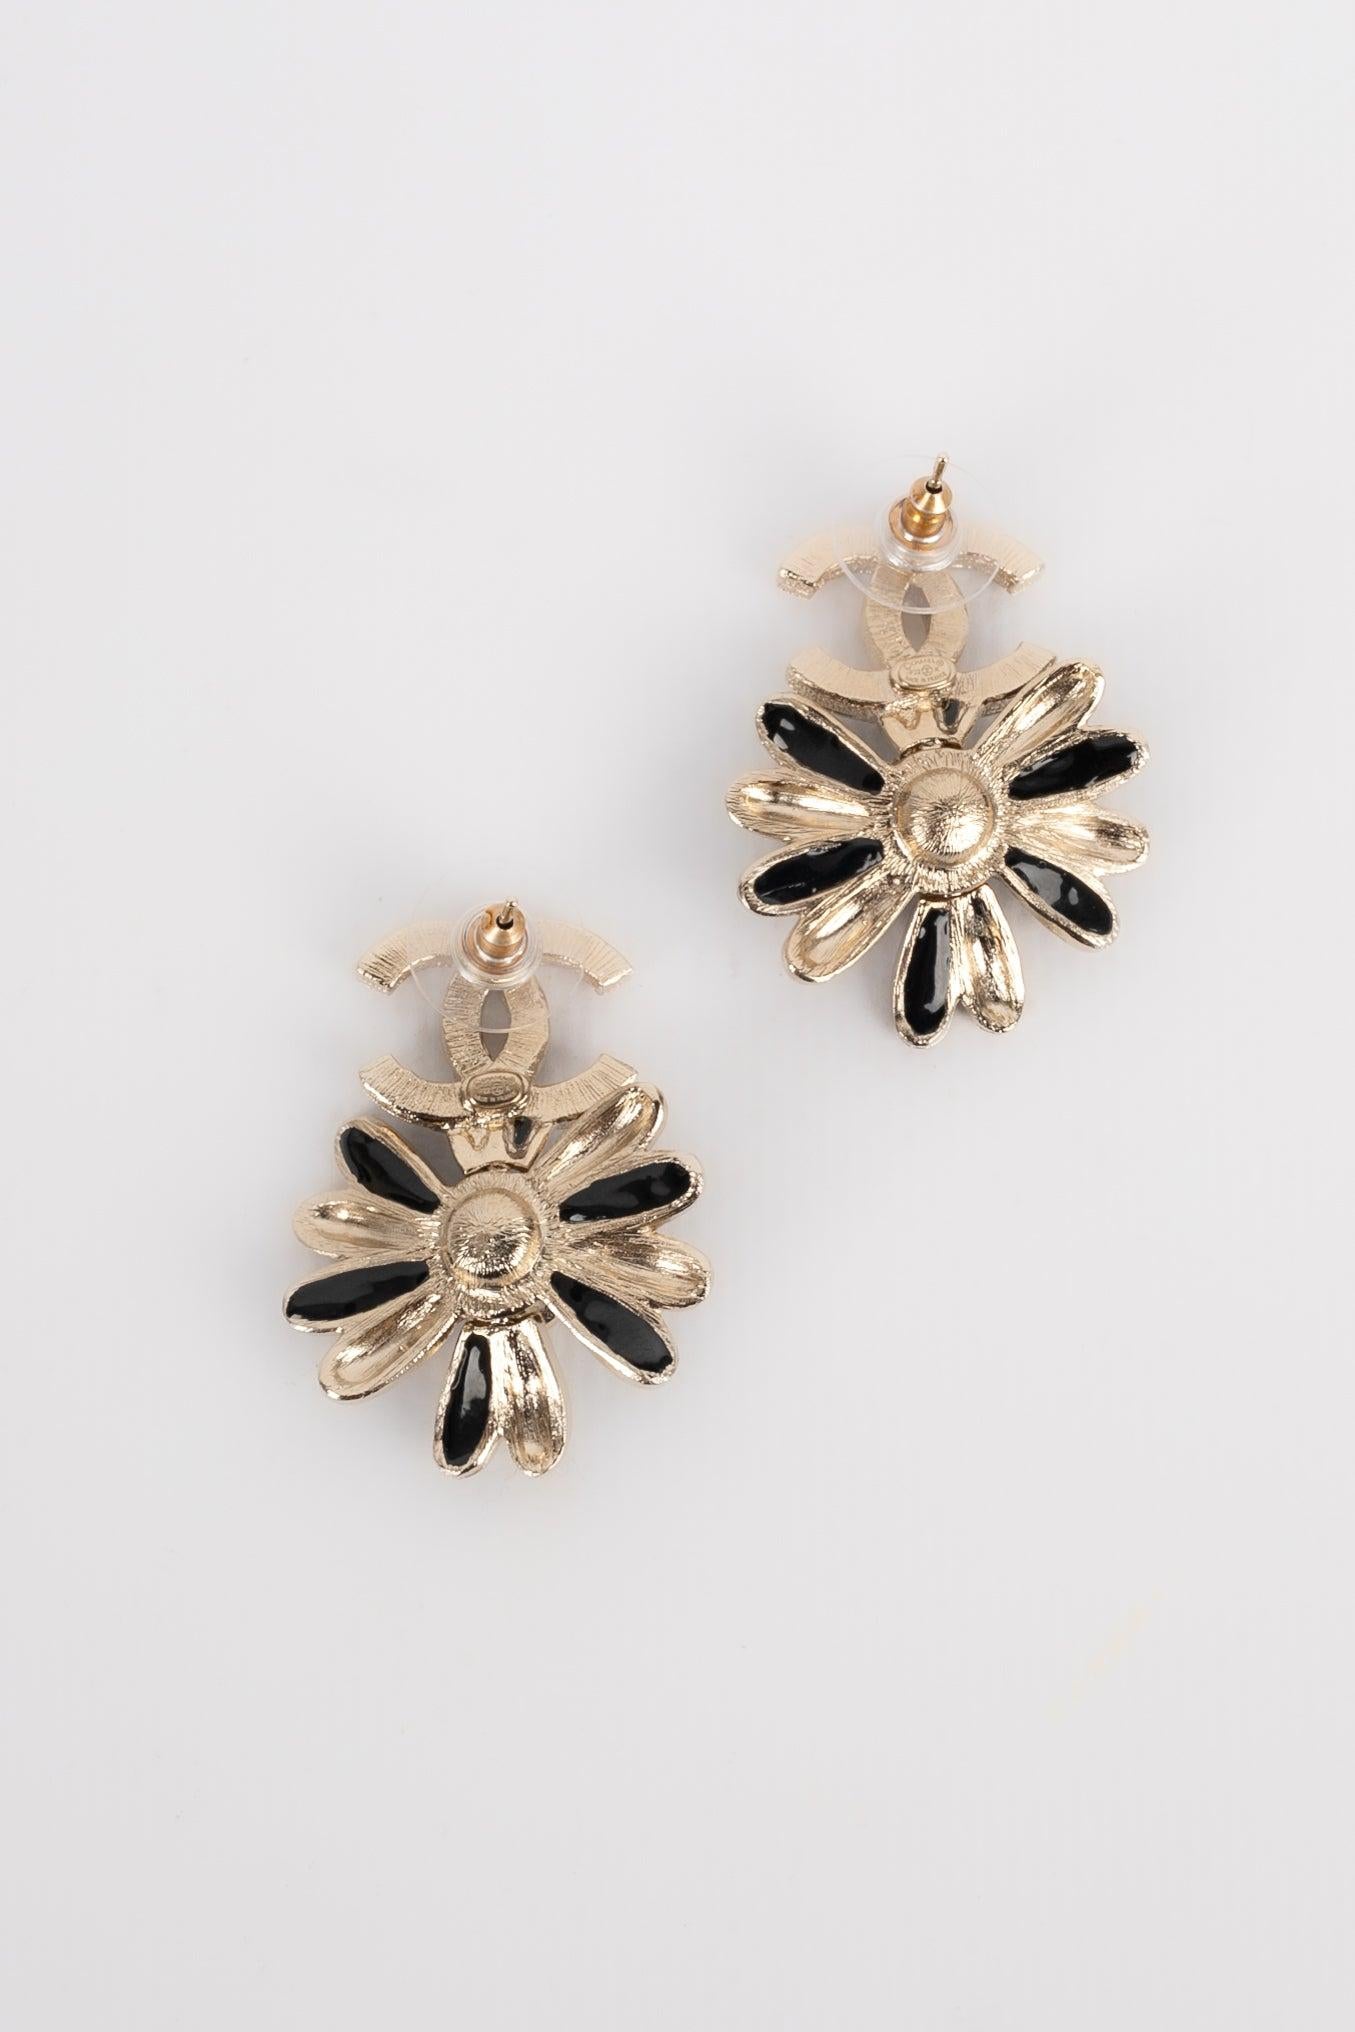 Chanel - (Made in France) Emaillierte Ohrringe aus silbernem Metall, die eine Blume darstellen. 2022 Collection'S.
 
 Zusätzliche Informationen: 
 Zustand: Sehr guter Zustand
 Abmessungen: 3,5 cm x 2,5 cm
 Zeitraum: 21. Jahrhundert
 
 Sellers